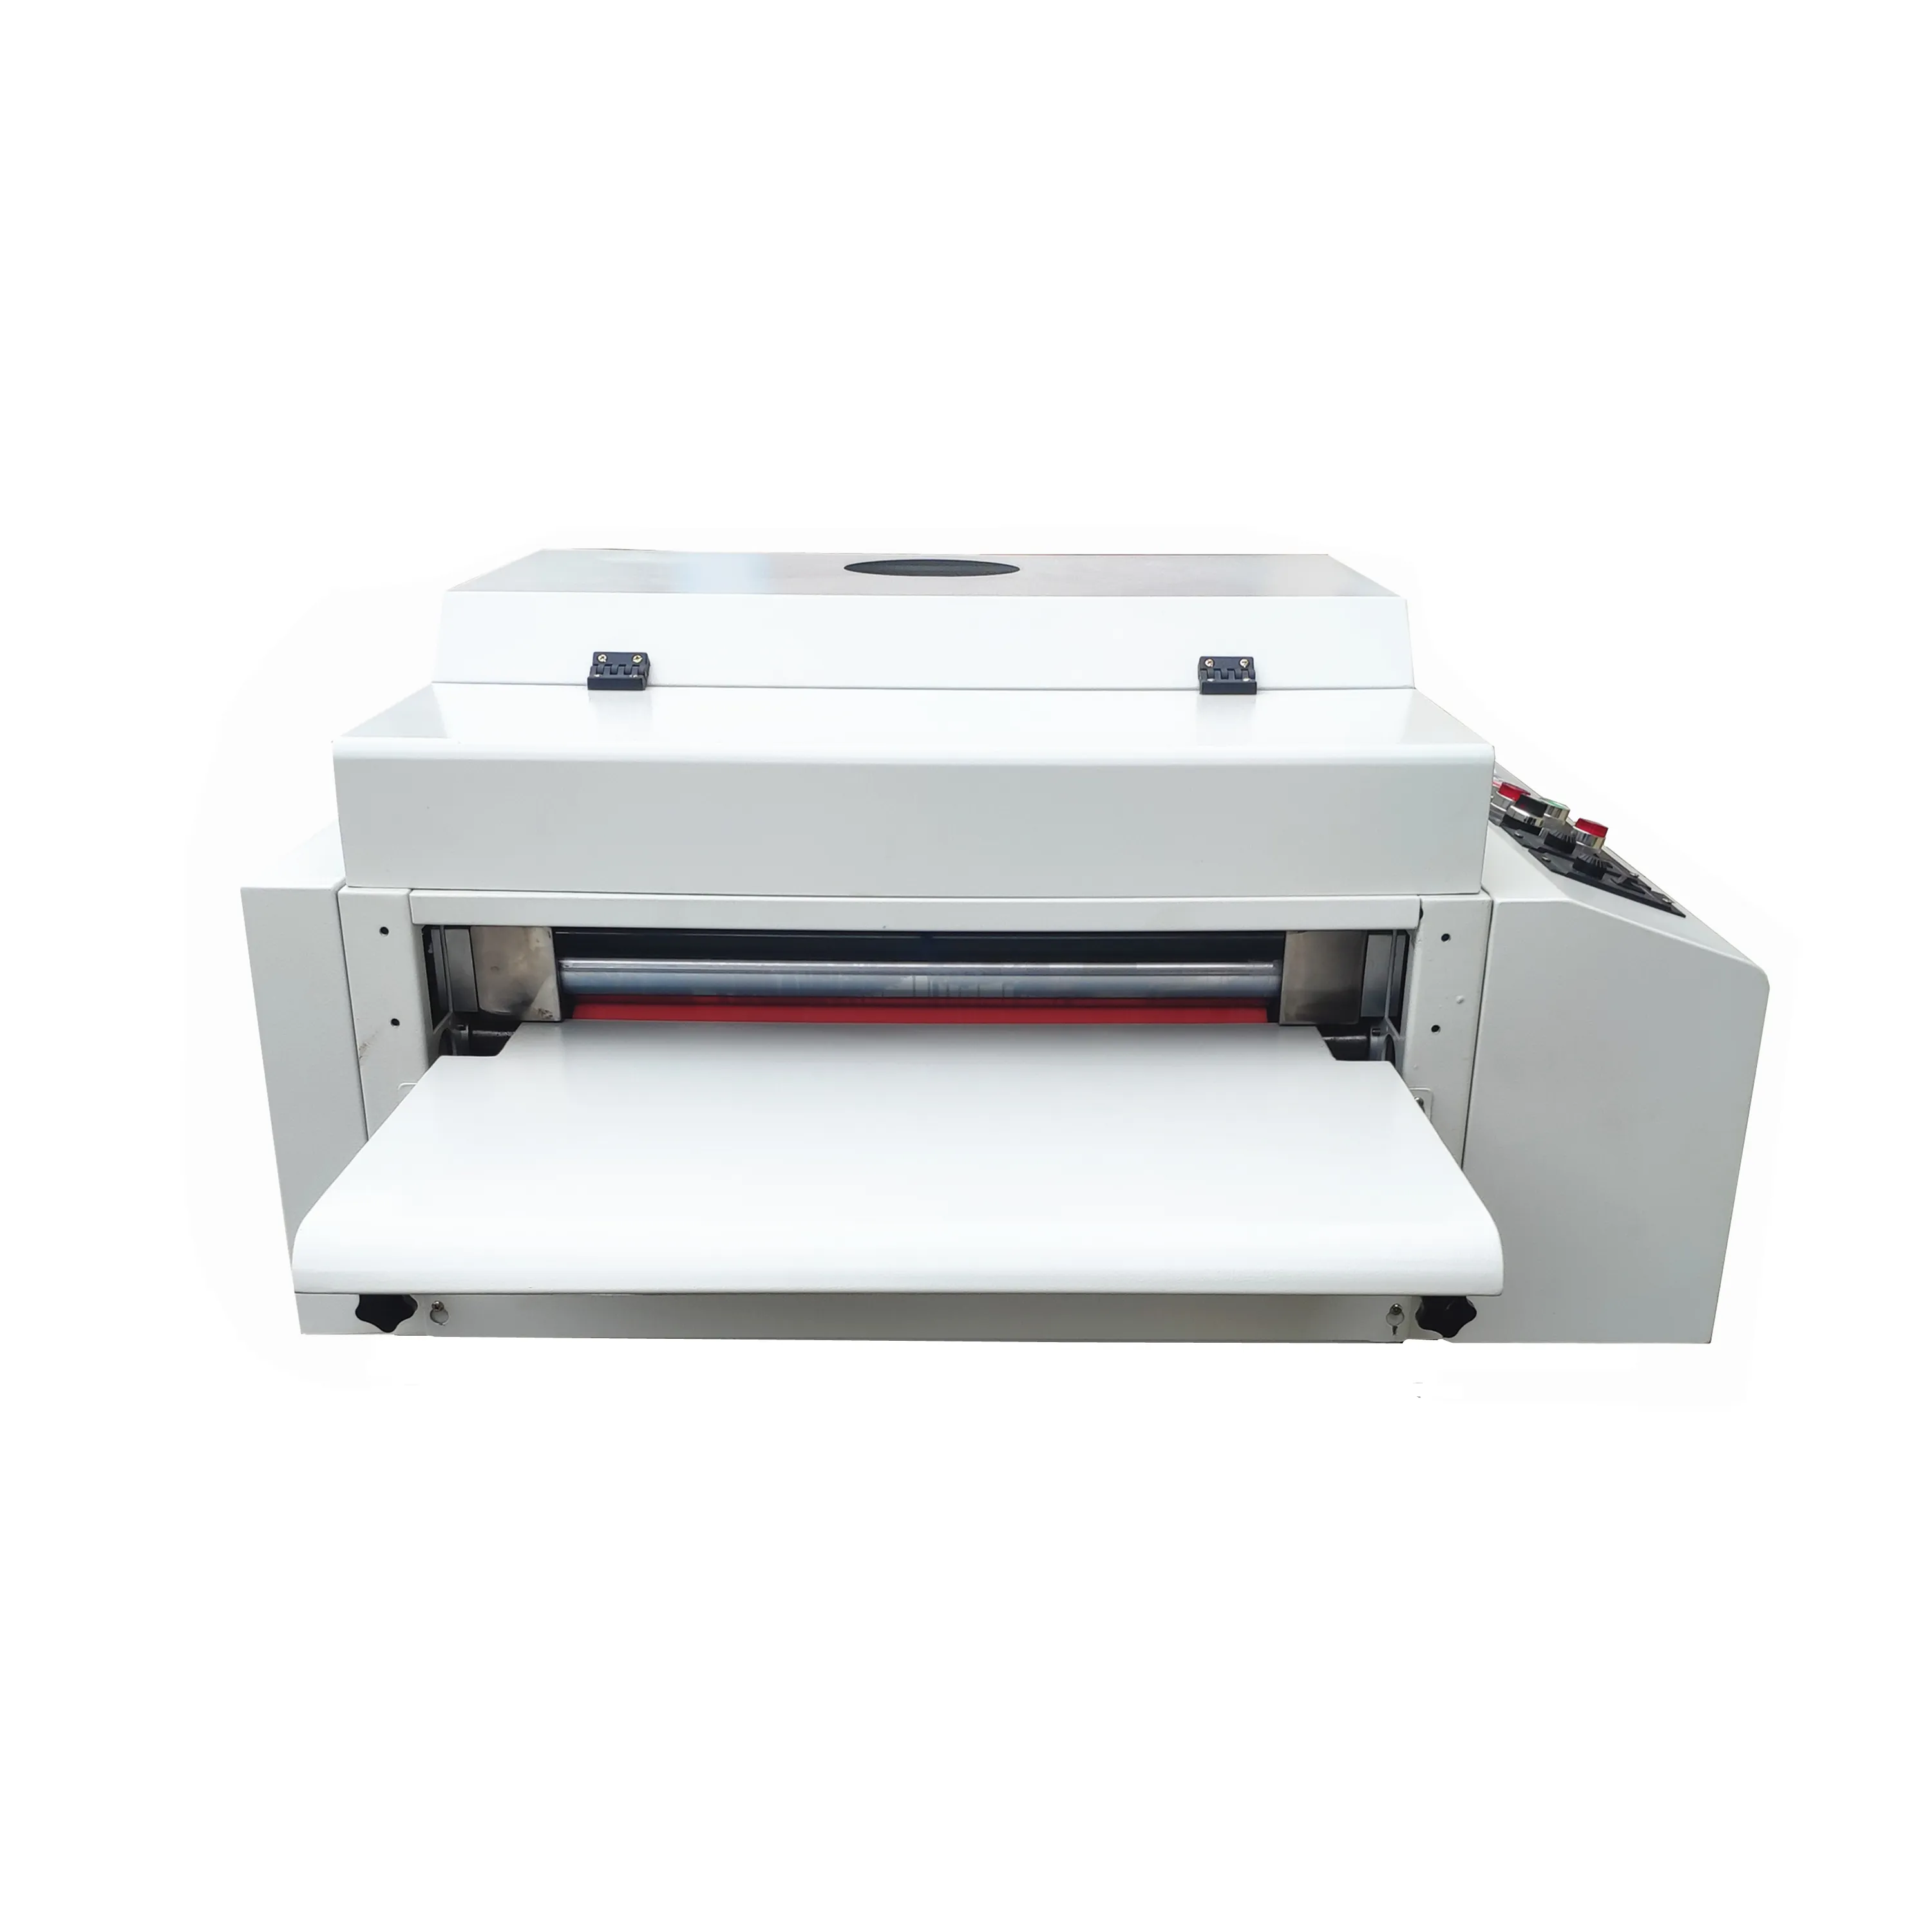 12 inches coating machine offset printing uv dryer machine